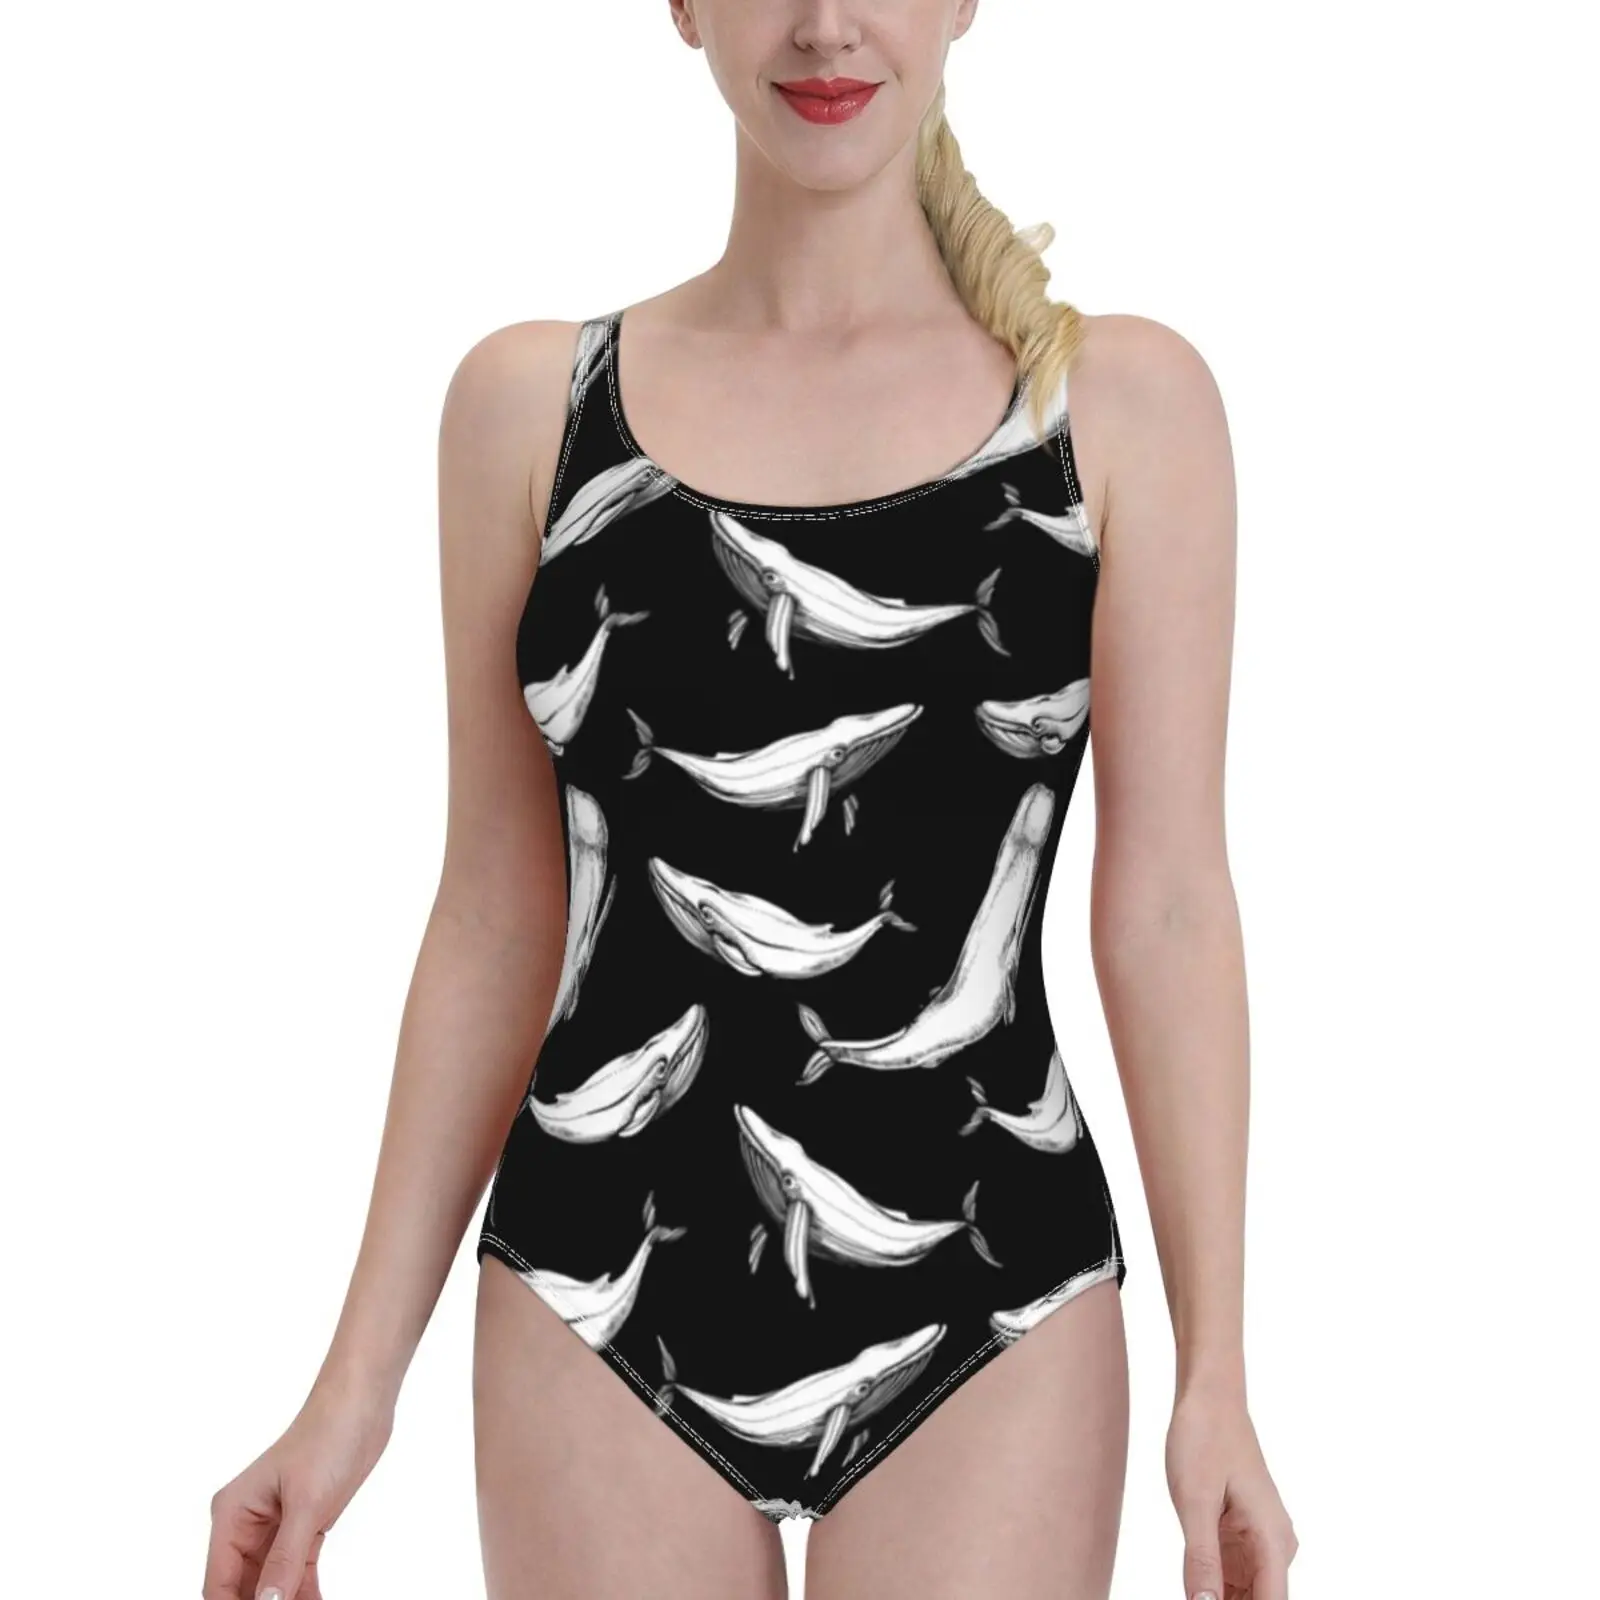 

Купальник женский сплошной с принтом киты в черном цвете, пикантный классический боди с открытой спиной, пляжная одежда для купания, бесшов...